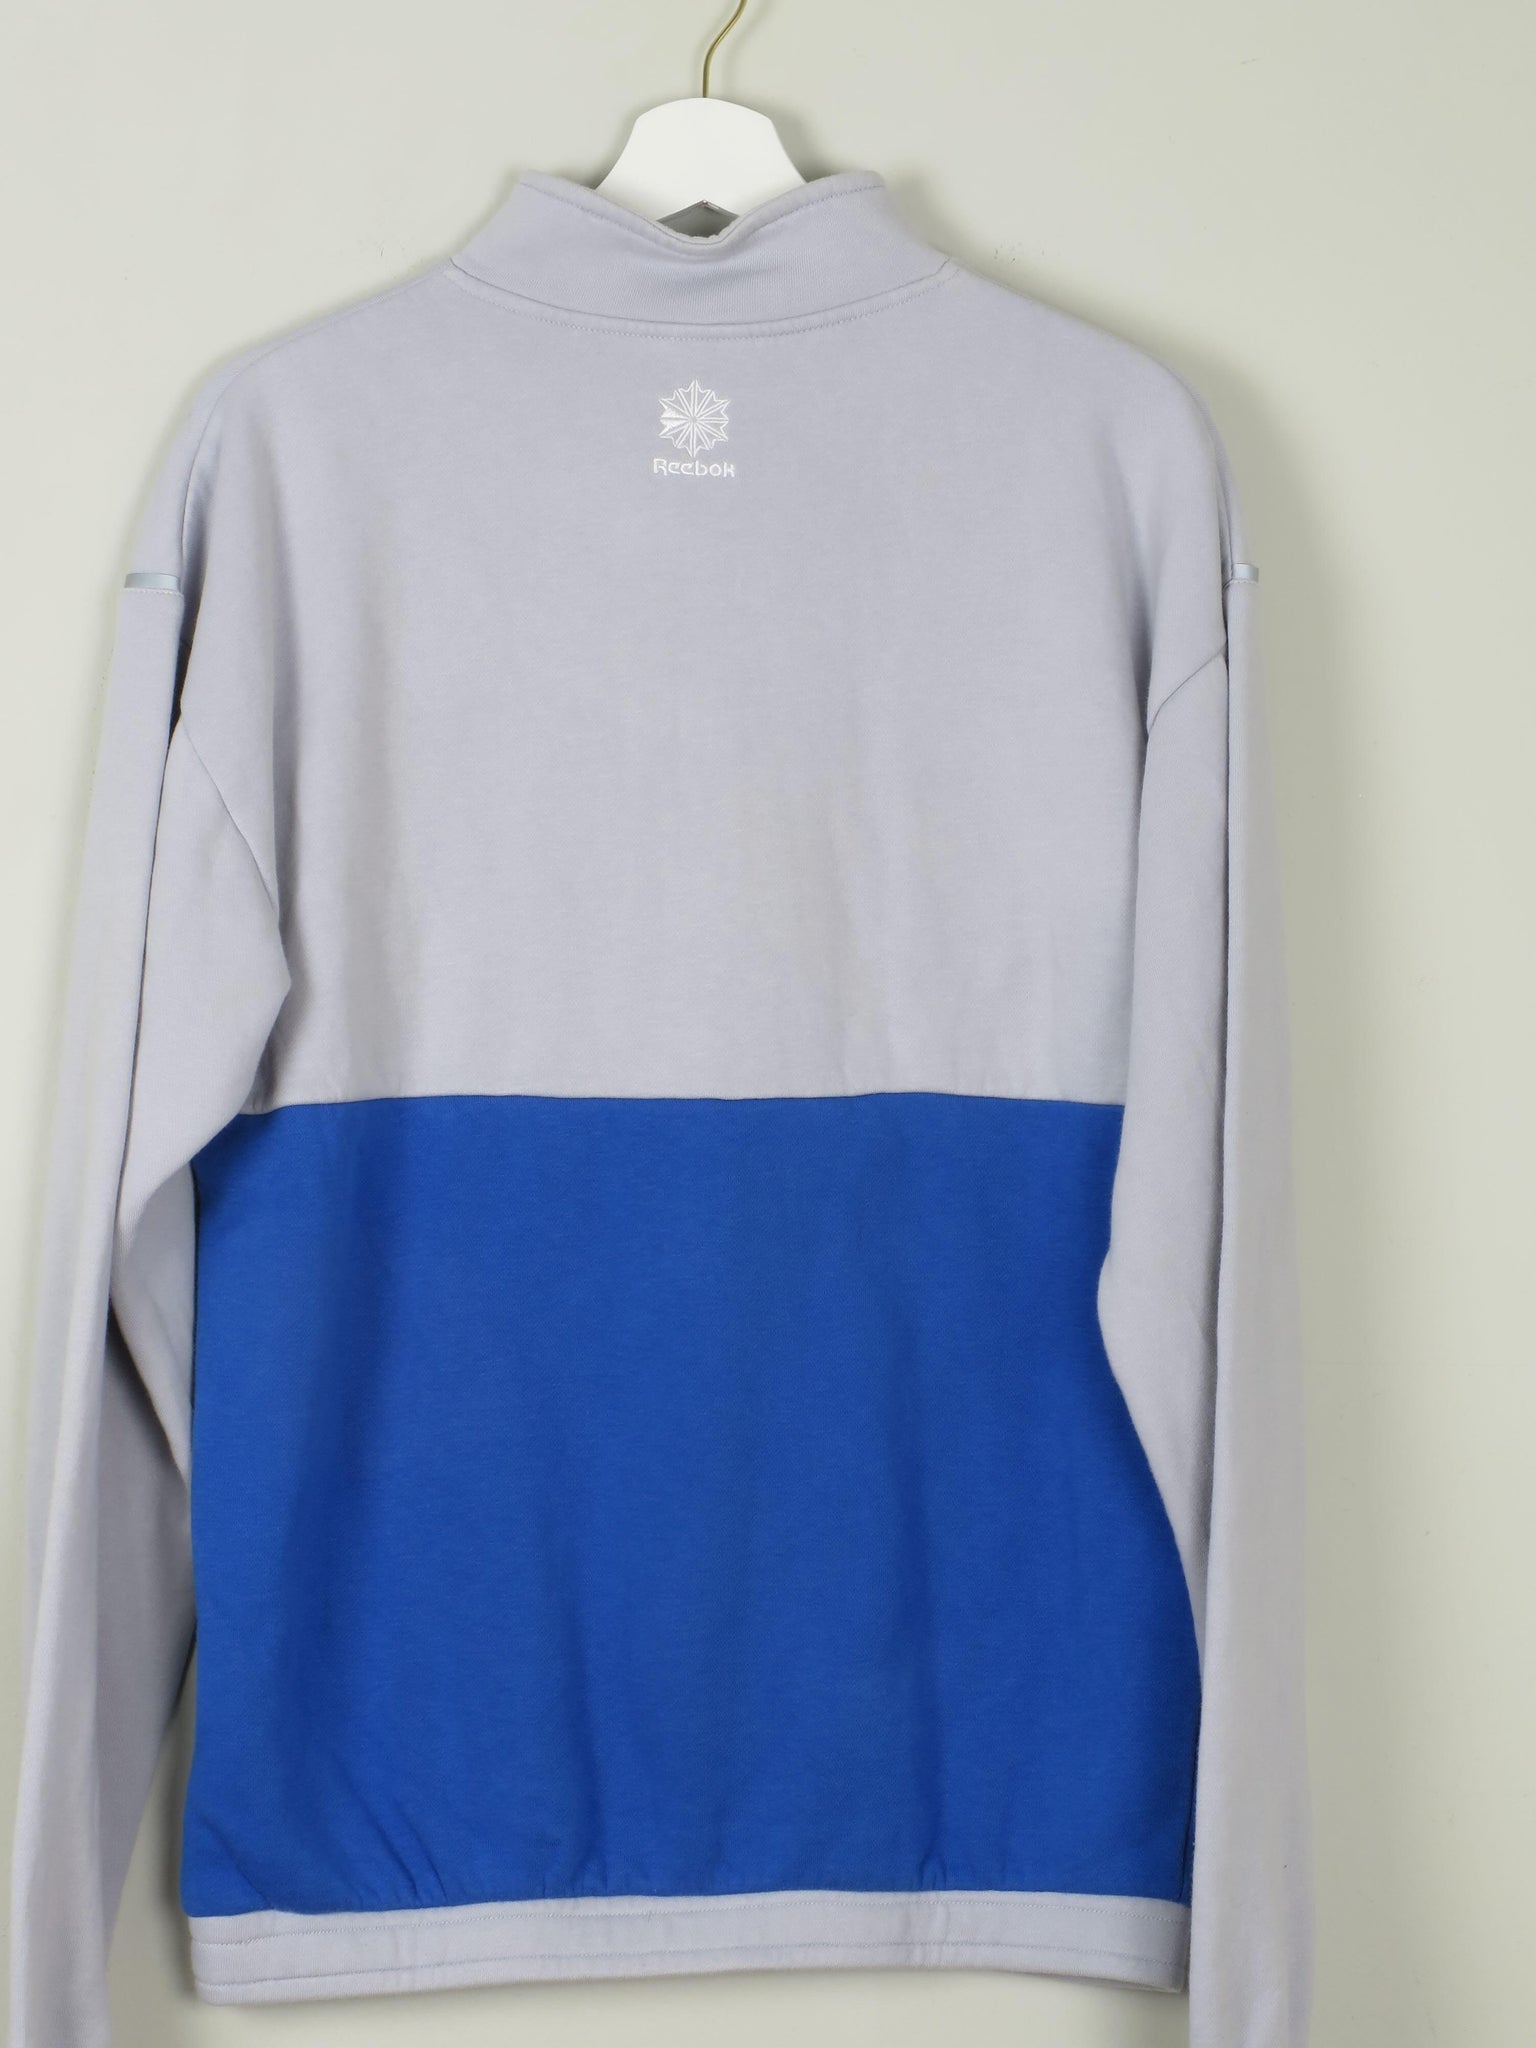 Men's Vintage Reebok Sweatshirt With Zip S - The Harlequin